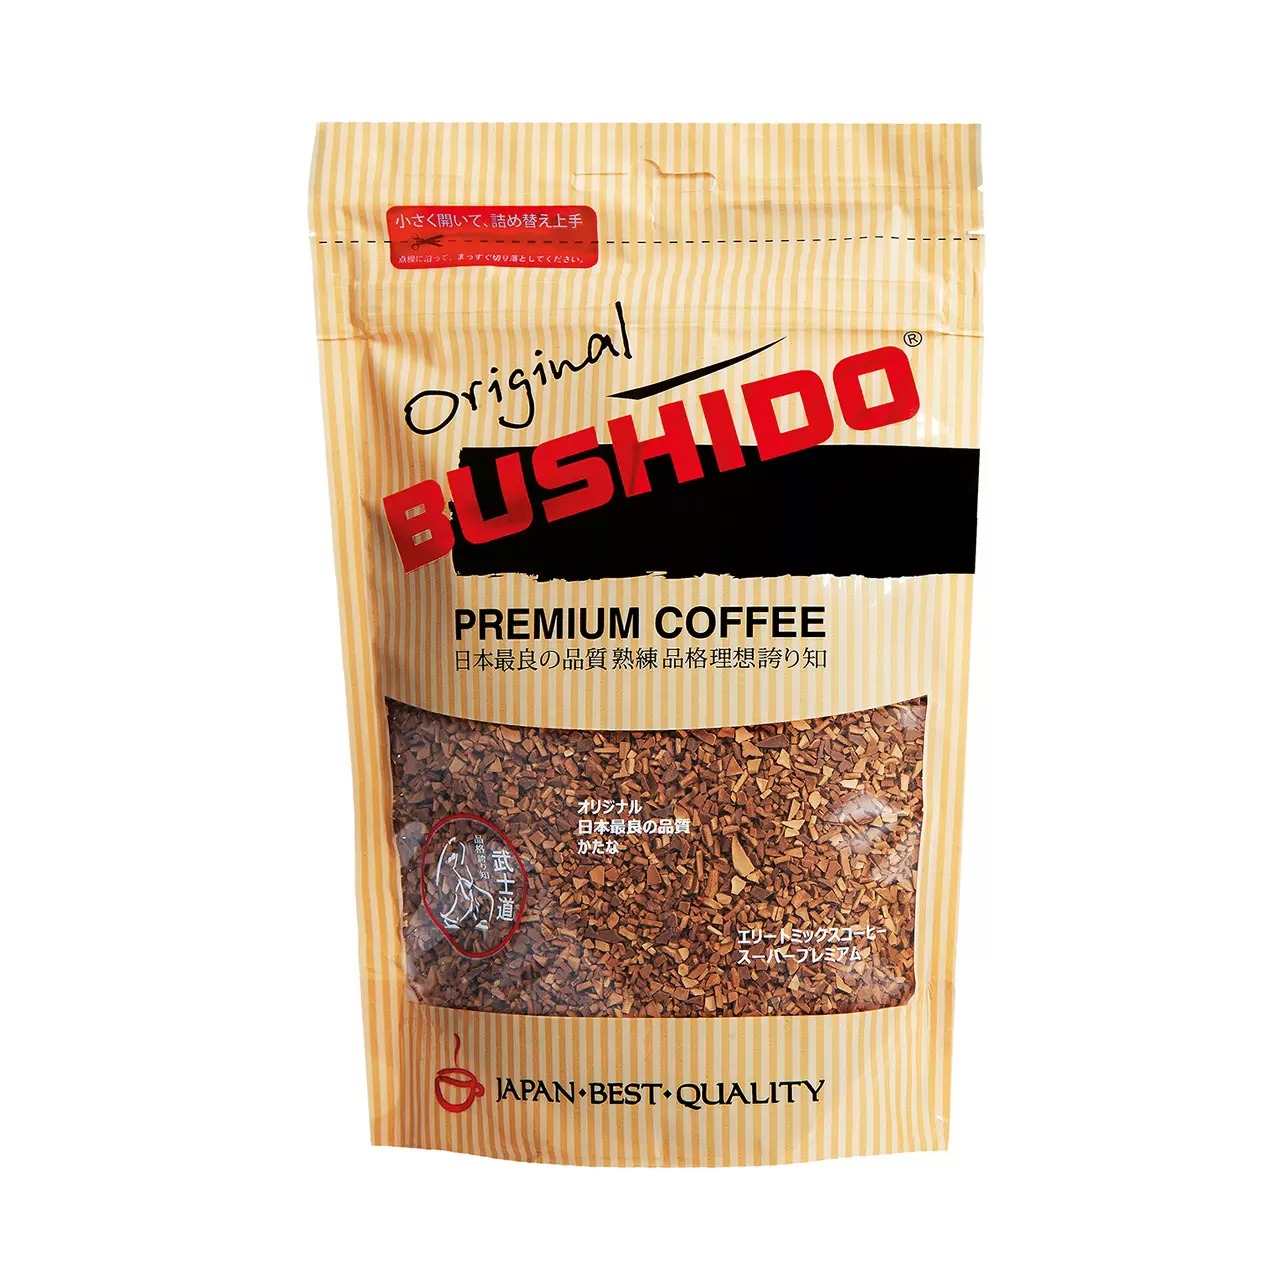 Кофе BUSHIDO Original сублимированный, 75 г кофе растворимый 3 в 1 петровская слобода пломбир 18 г 25 пакетиков